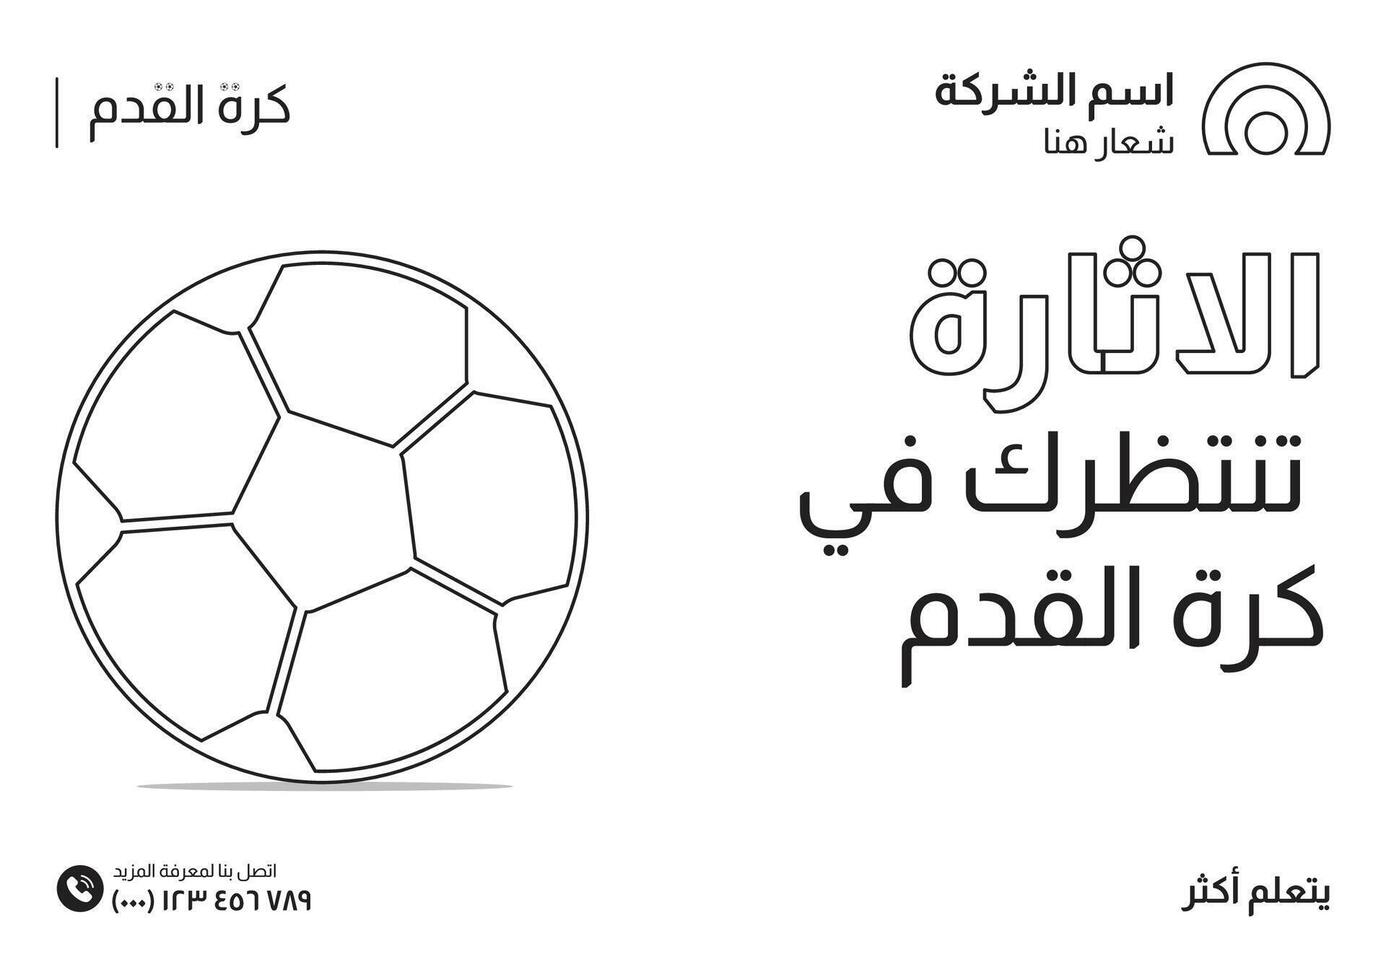 Fußball Unternehmen Sozial Medien Banner Design im Arabisch Stil vektor